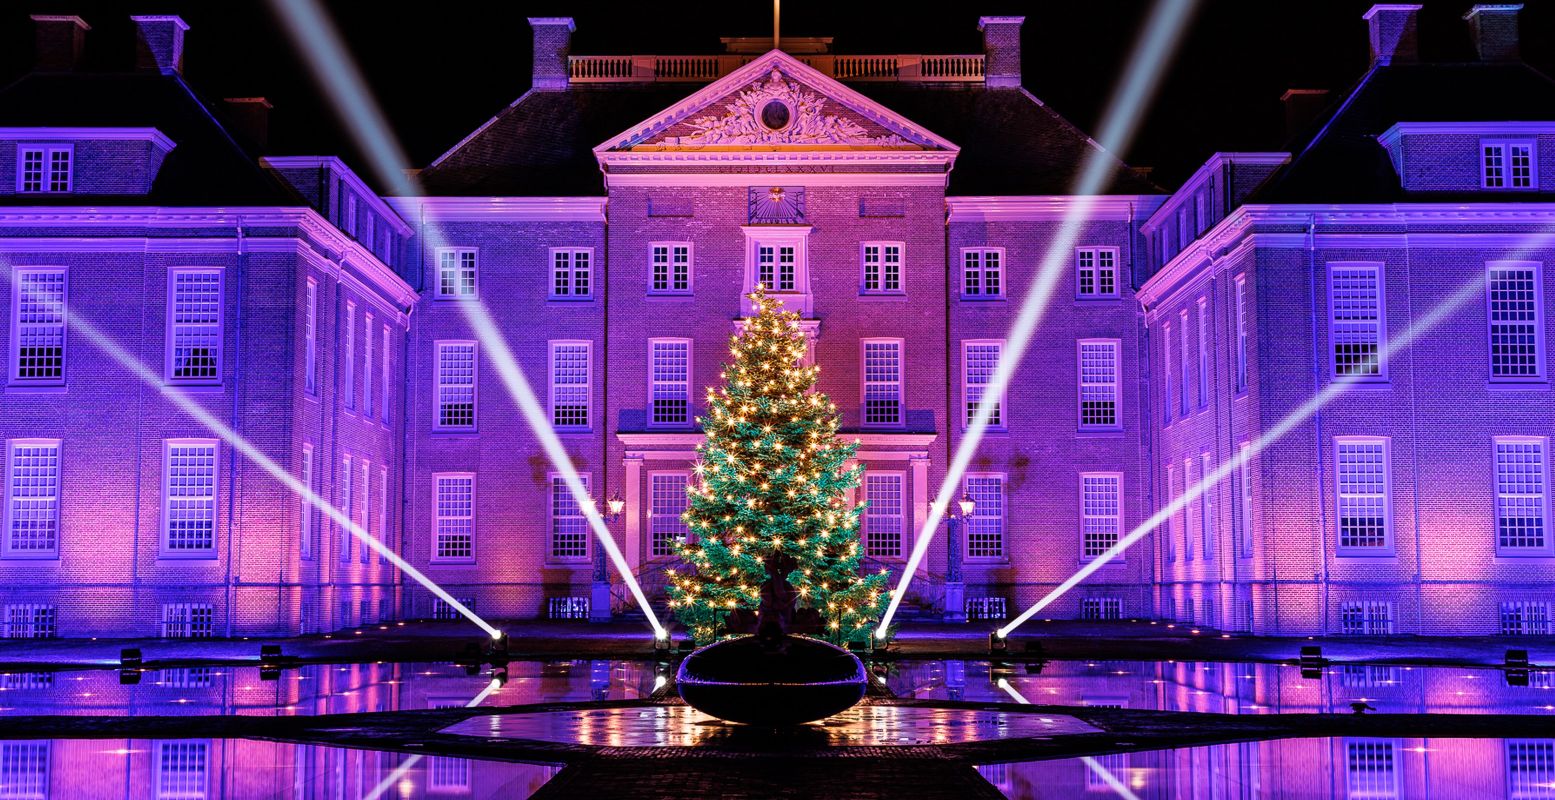 Paleis Het Loo is in december en de kerstvakantie prachtig verlicht! Foto: Paleis Het Loo